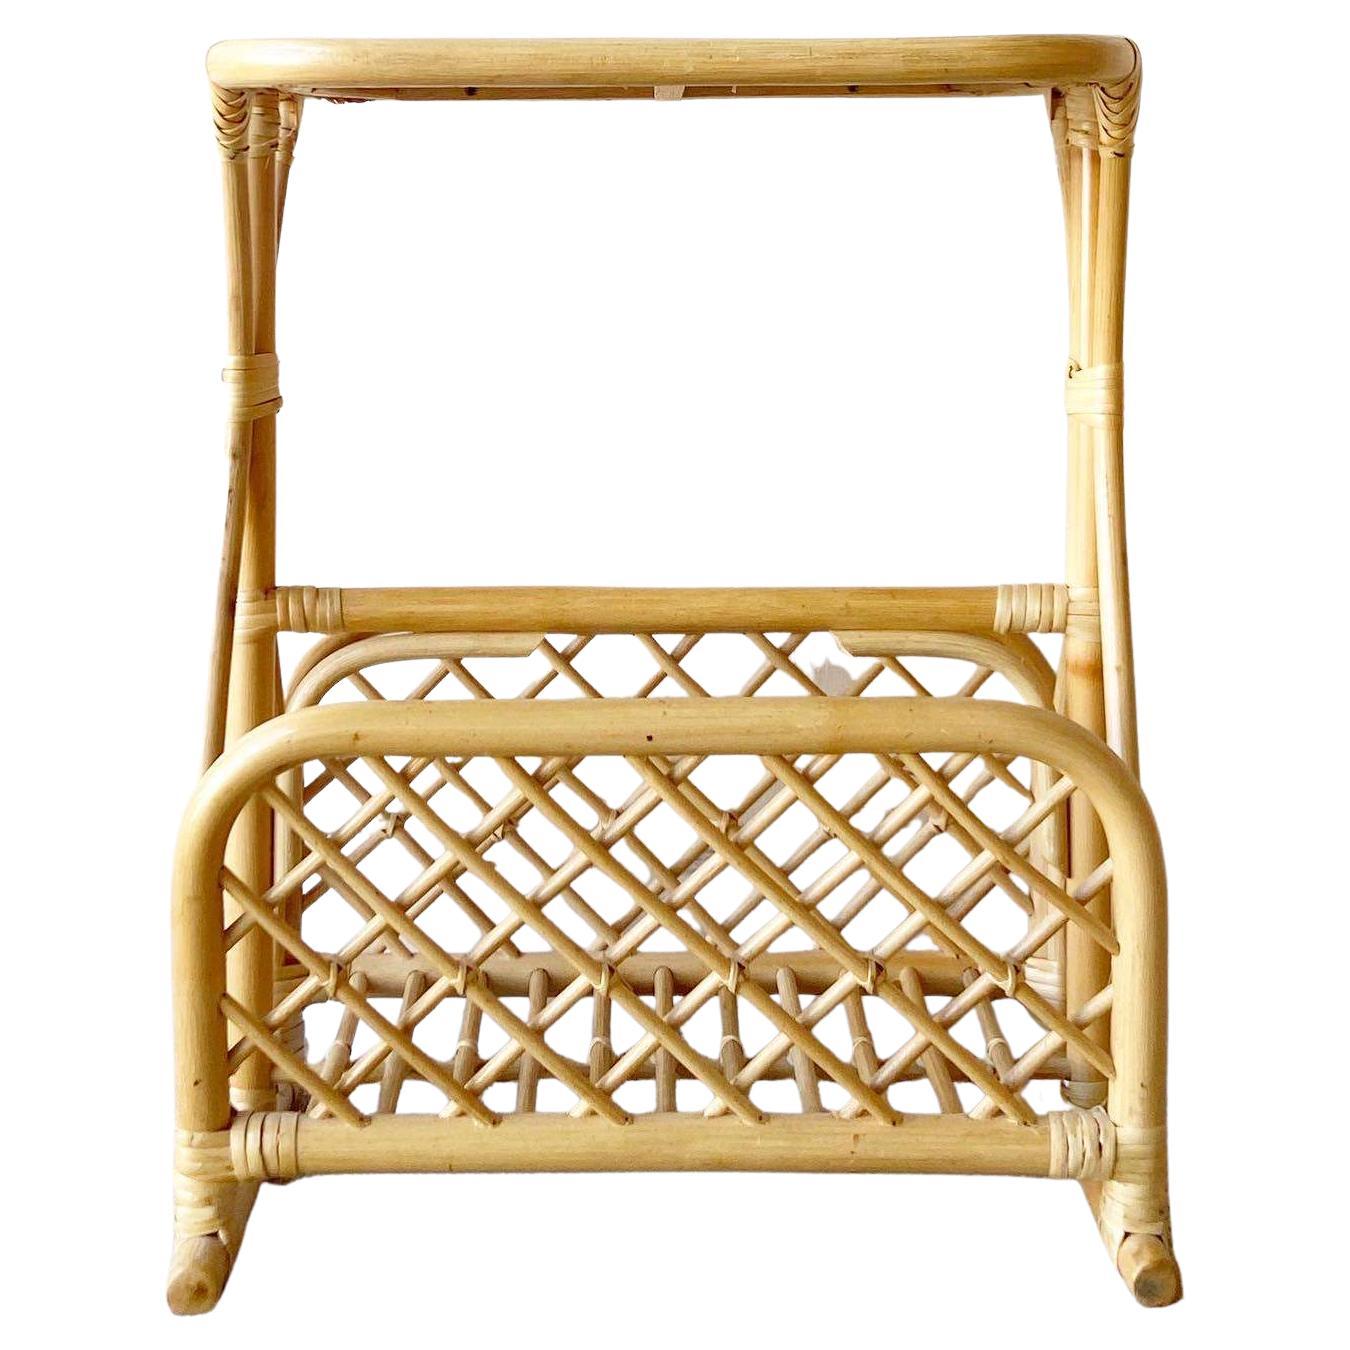 Exceptionnelle chaise boho vintage en bambou rotin porte-revues/table d'appoint. Elle présente un magnifique design sculpté avec une finition blonde et un plateau en osier.
